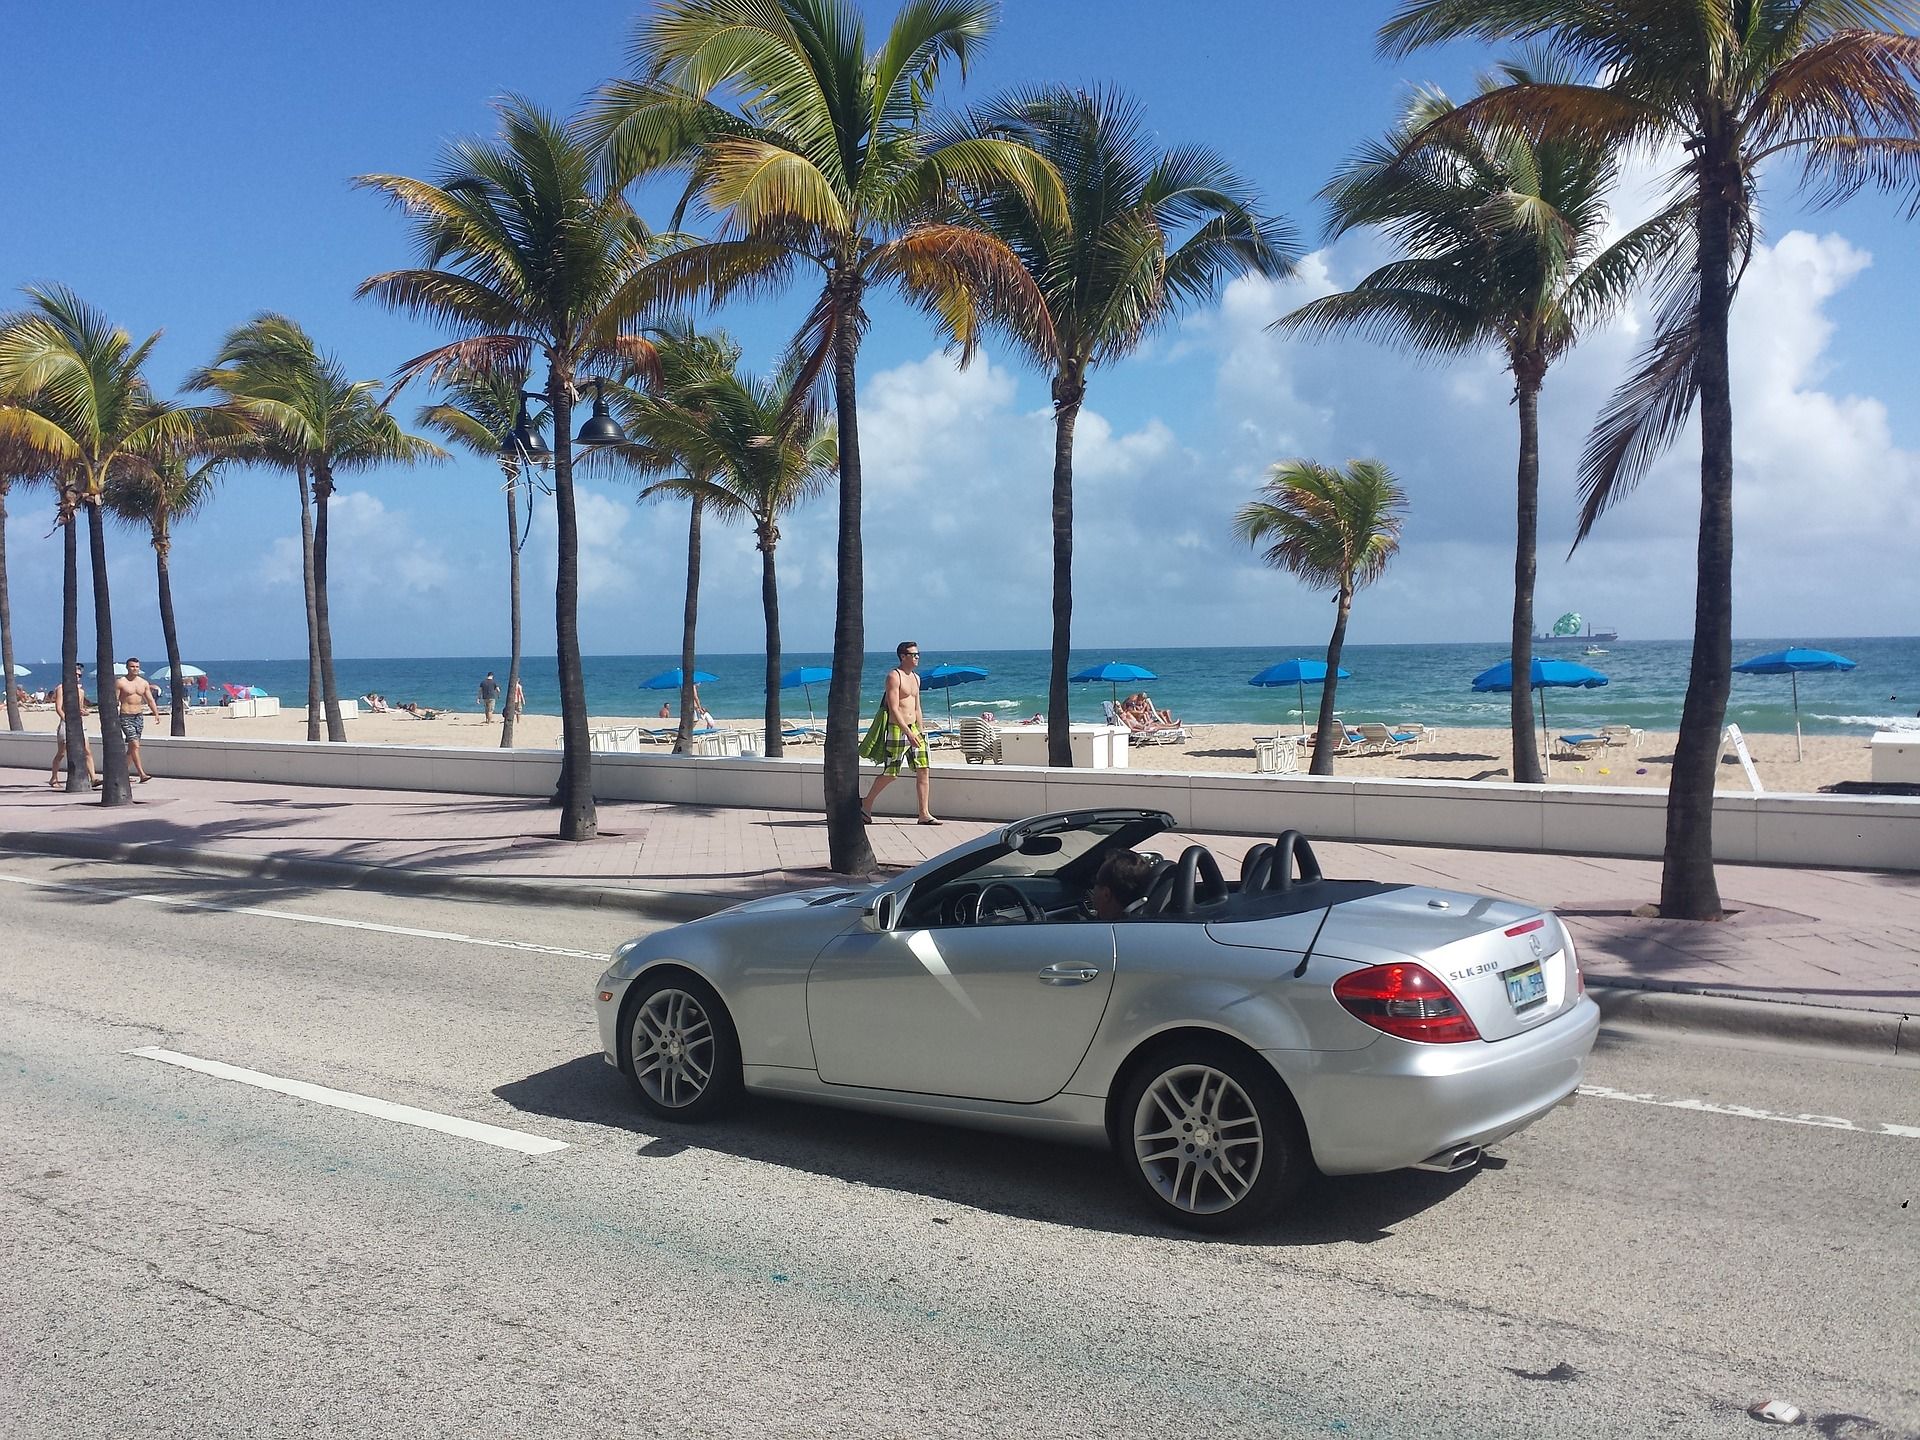 A car driving along Miami Beach, Florida